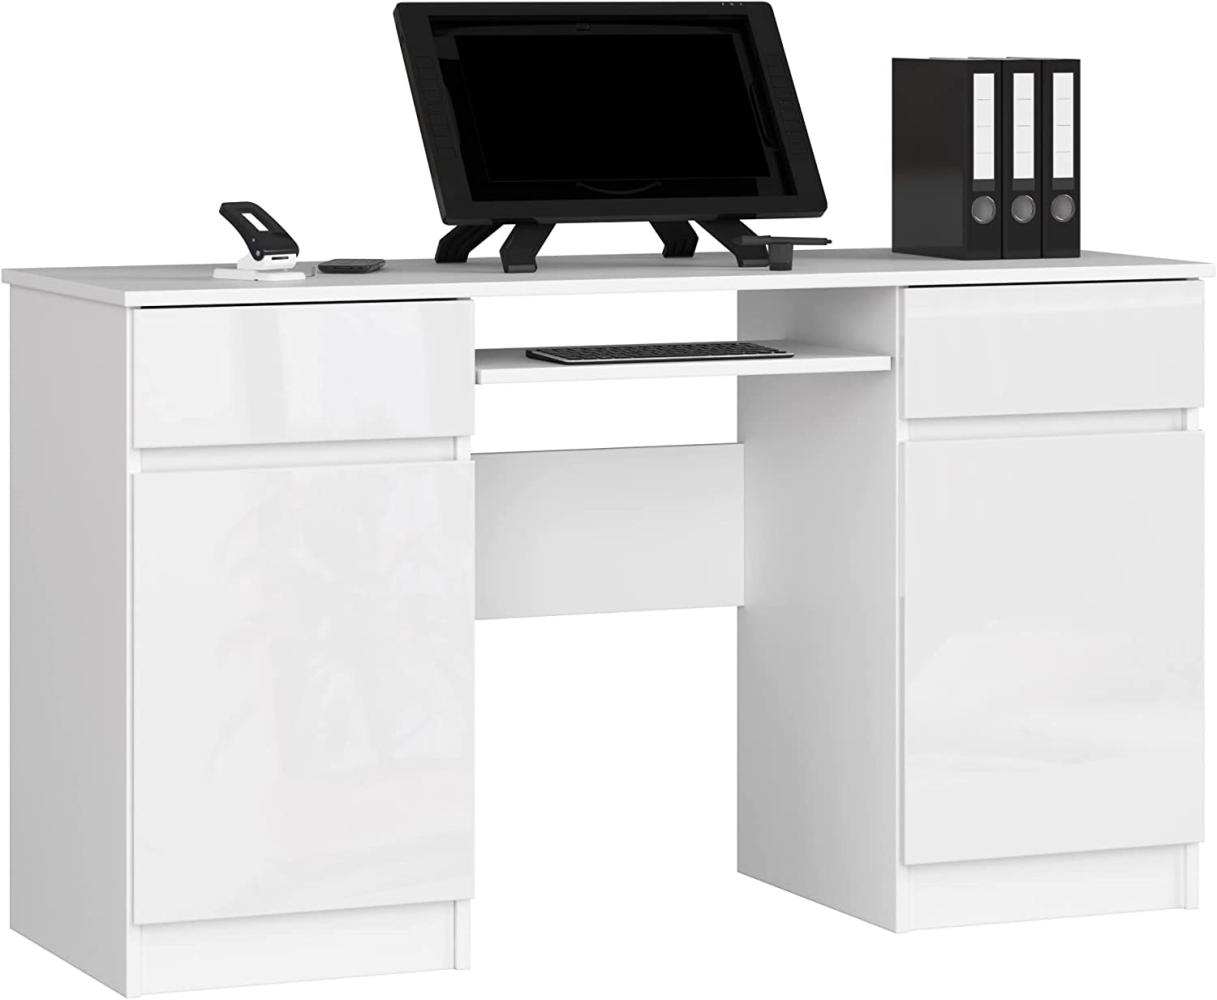 PC-Schreibtisch A5 mit Tastaturablage | Office Desk | Computertisch | Bürotisch mit Tastaturablage | 2 Schubladen und 2 Türablagen, B135 x H77 x T50 cm, 58 kg | Weiß/Weiß Glänzend Bild 1